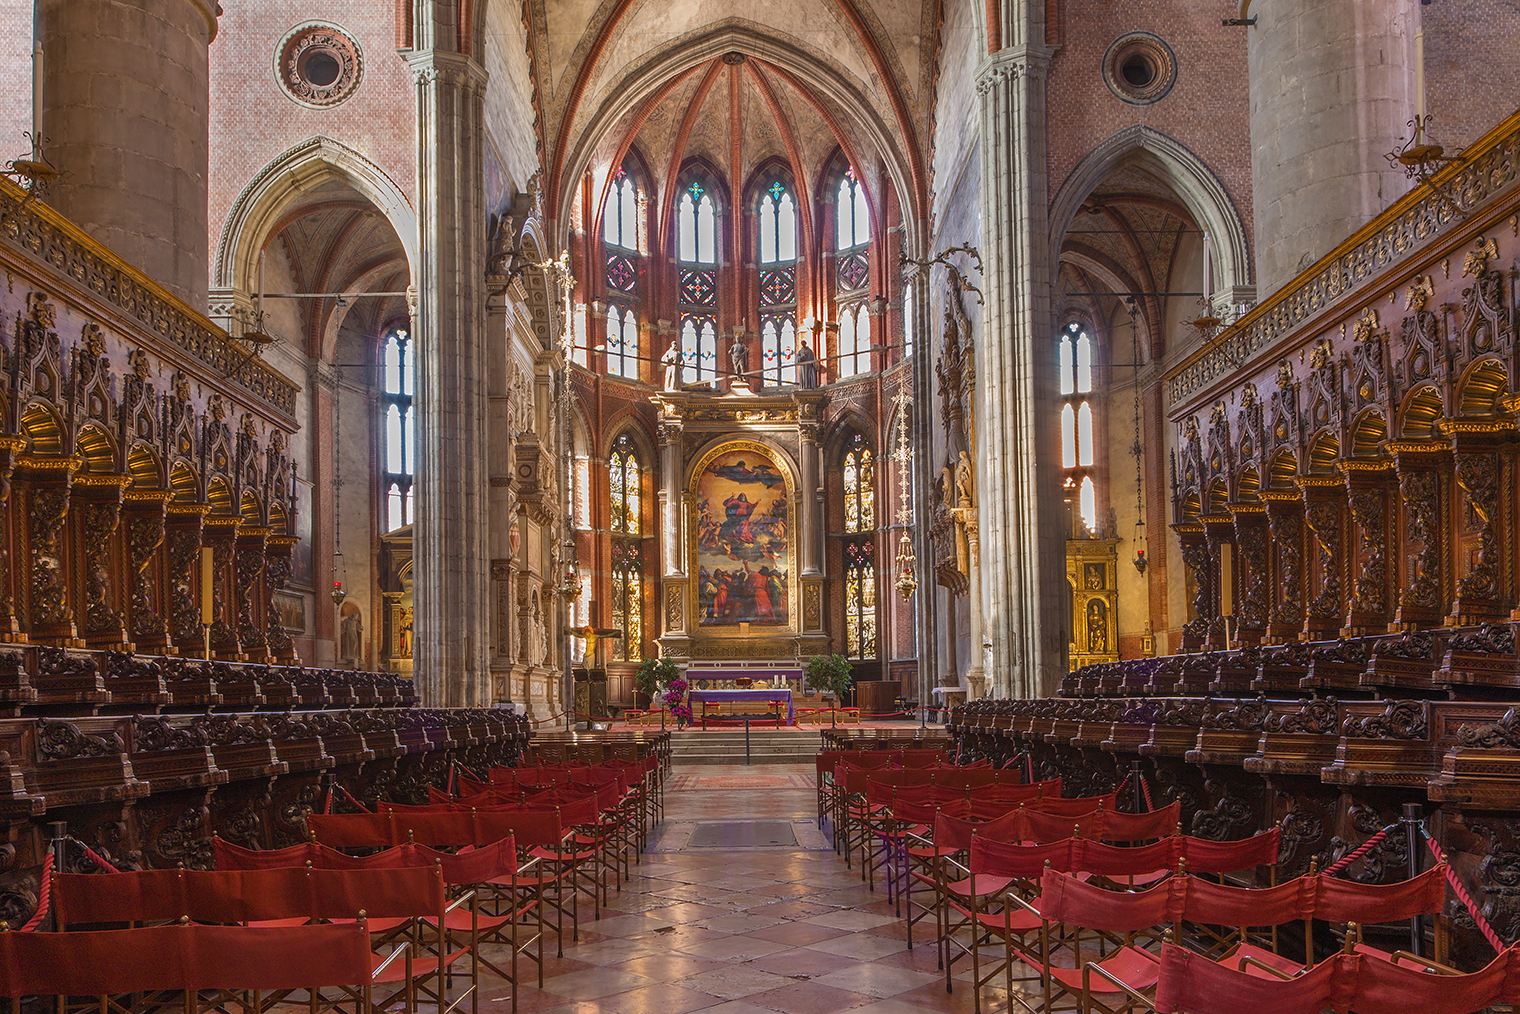 Главный алтарь церкви с еще одним шедевром Тициана в центре — картиной «Вознесение Девы Марии». Фотография: Renata Sedmakova / Shutterstock